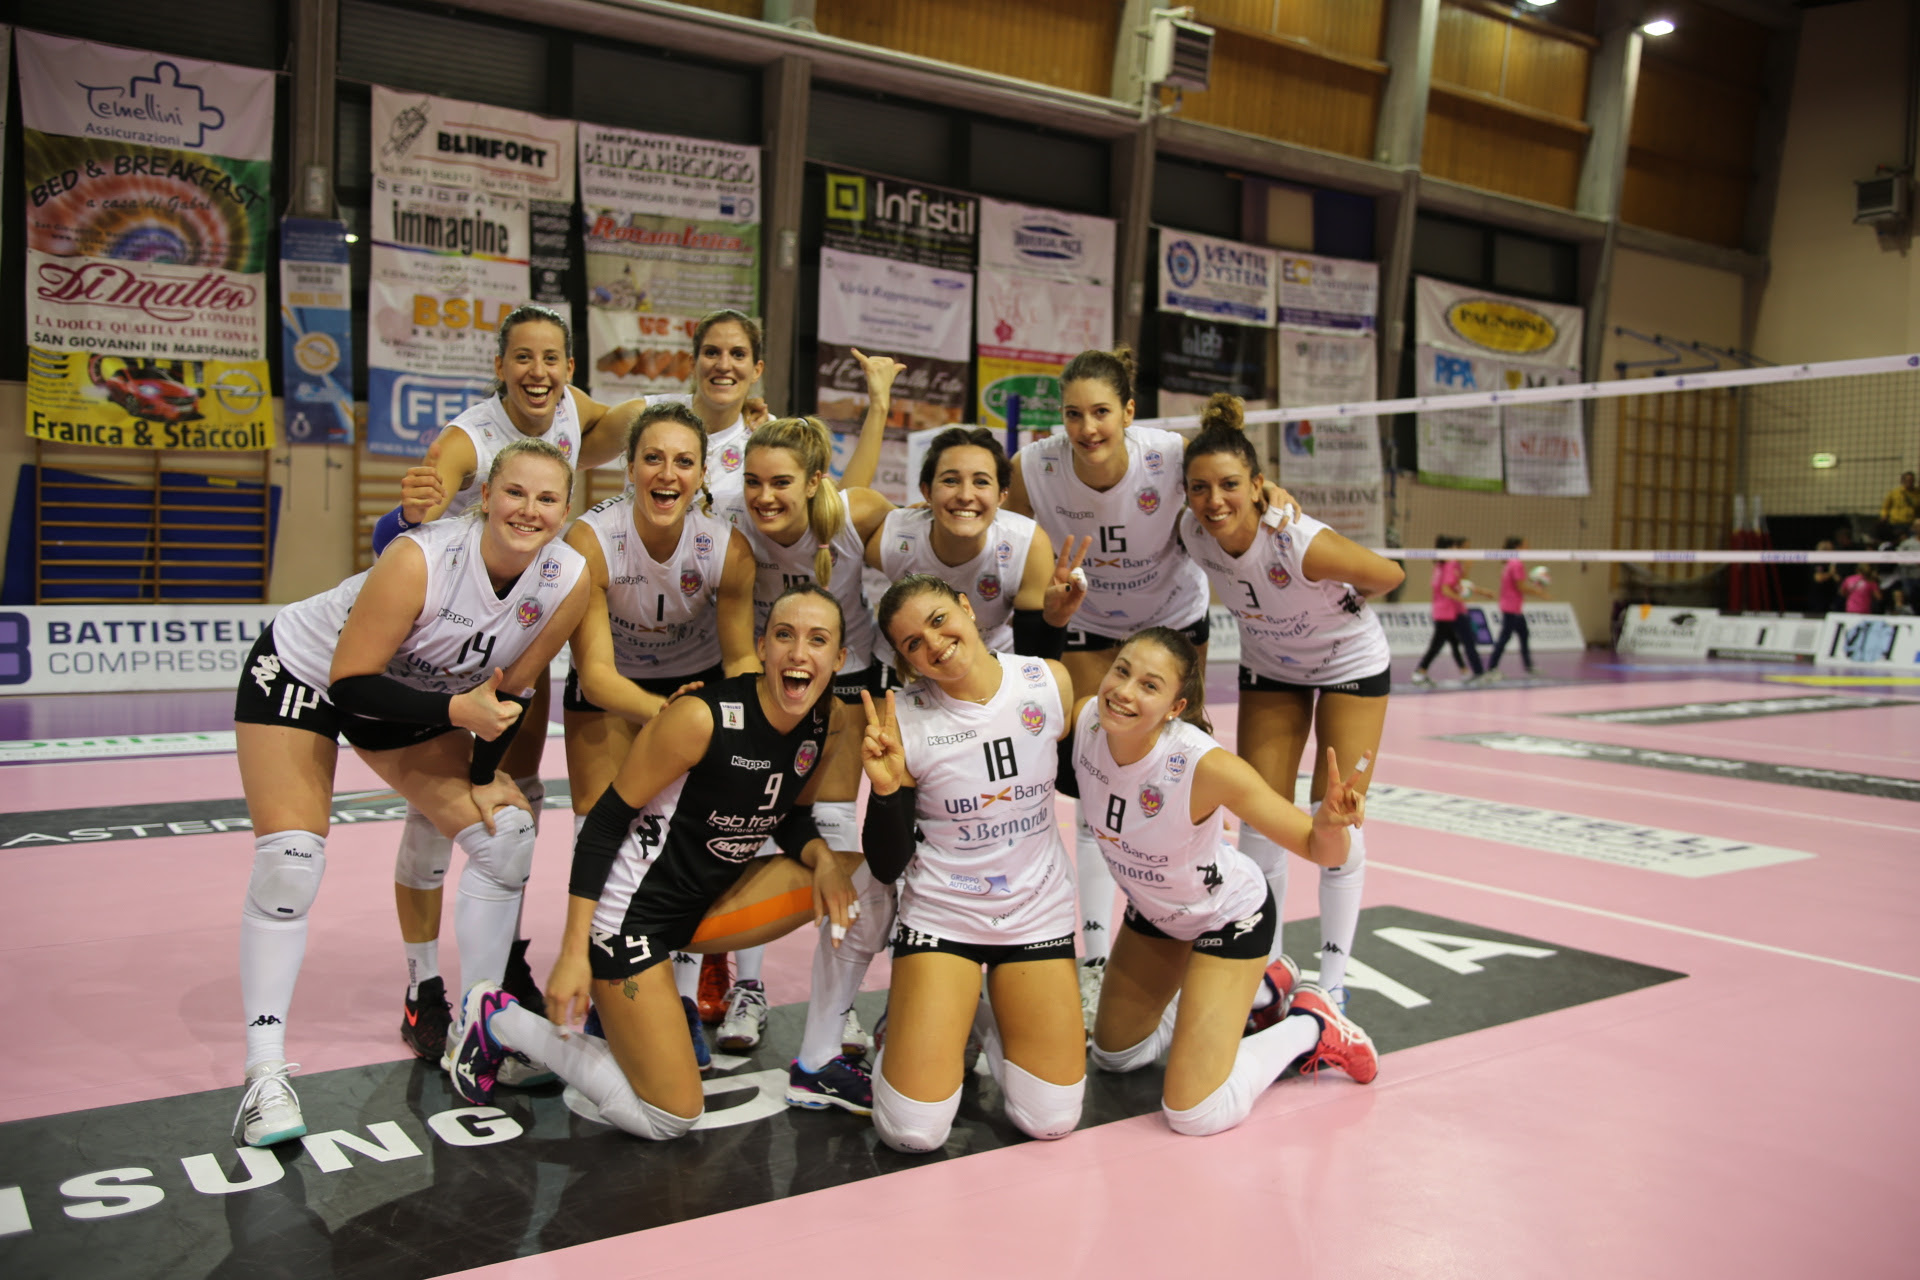  Samsung Galaxy Volley Cup A2: Cuneo vince sul campo della Battistelli ed è la nuova capolista